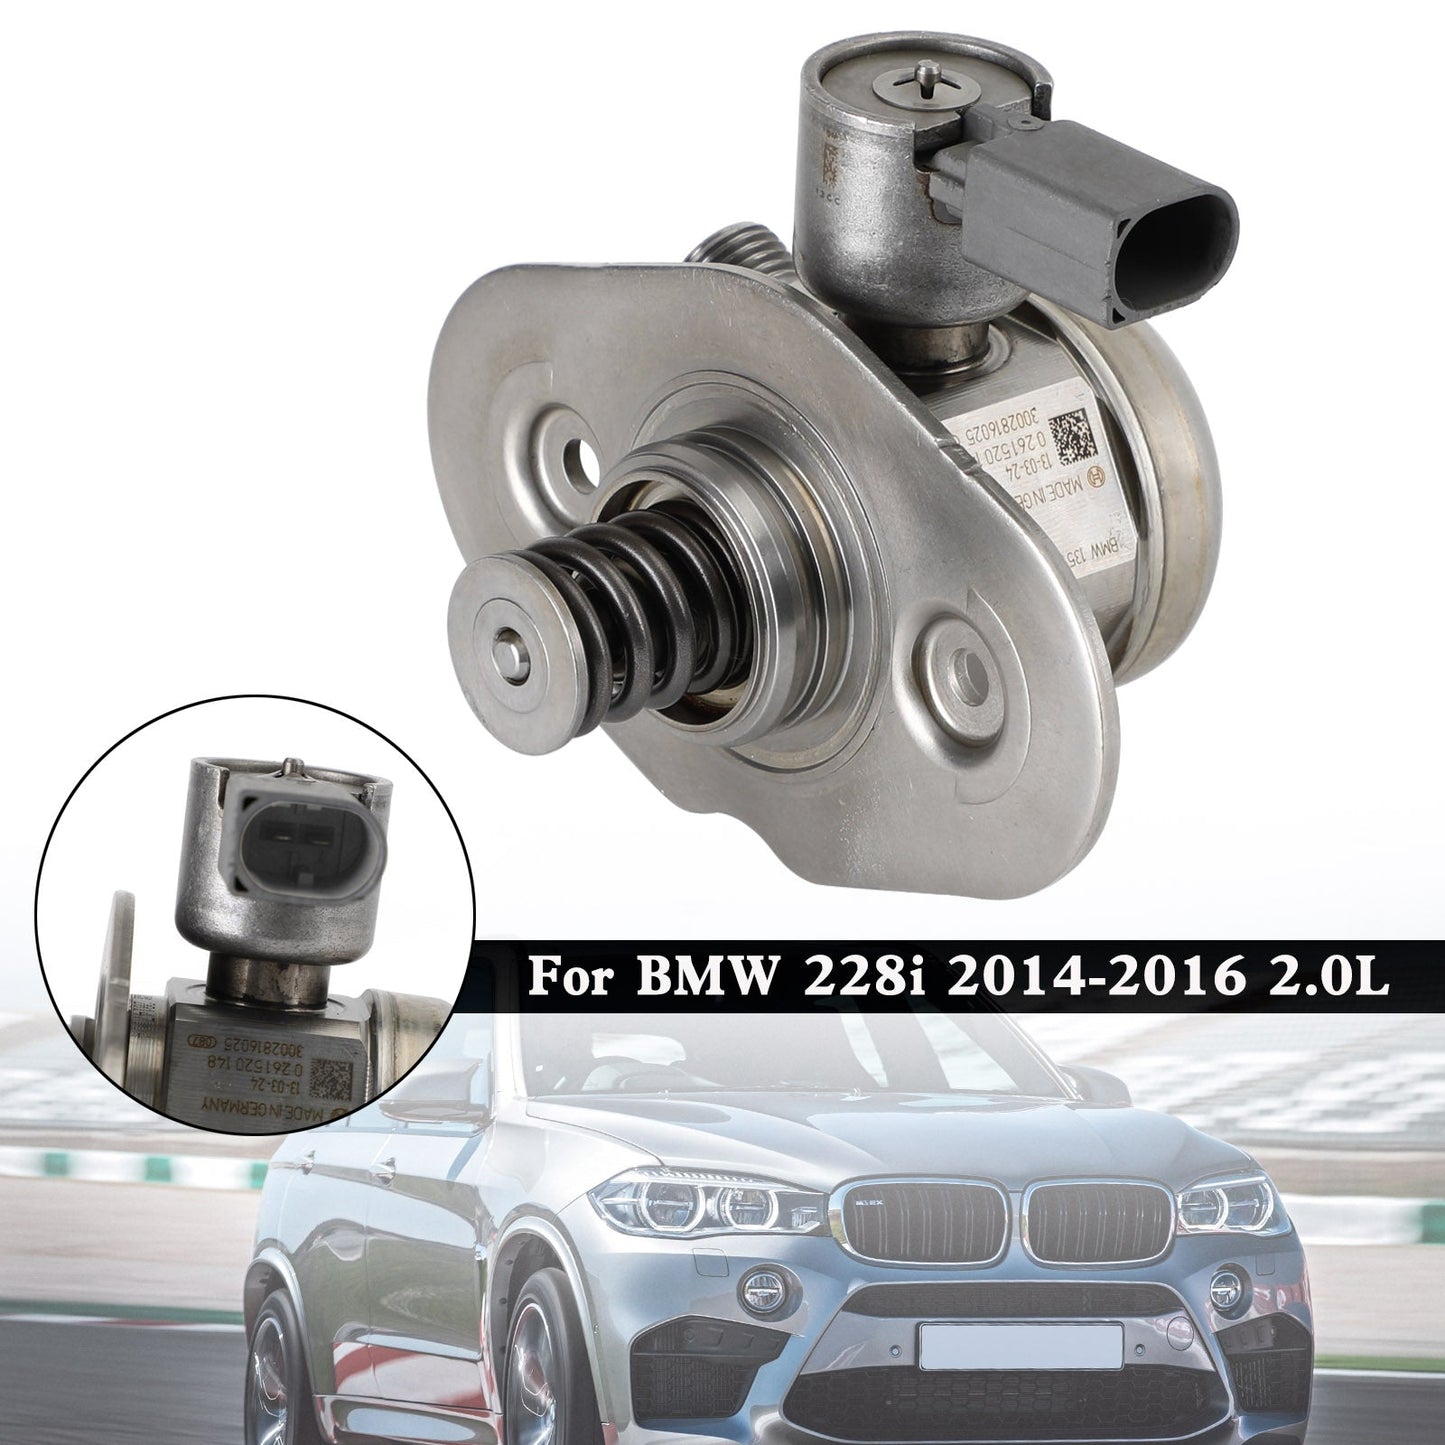 BMW 428i 2014-2016 2.0L Pompa carburante ad alta pressione 13517584461 323-59462